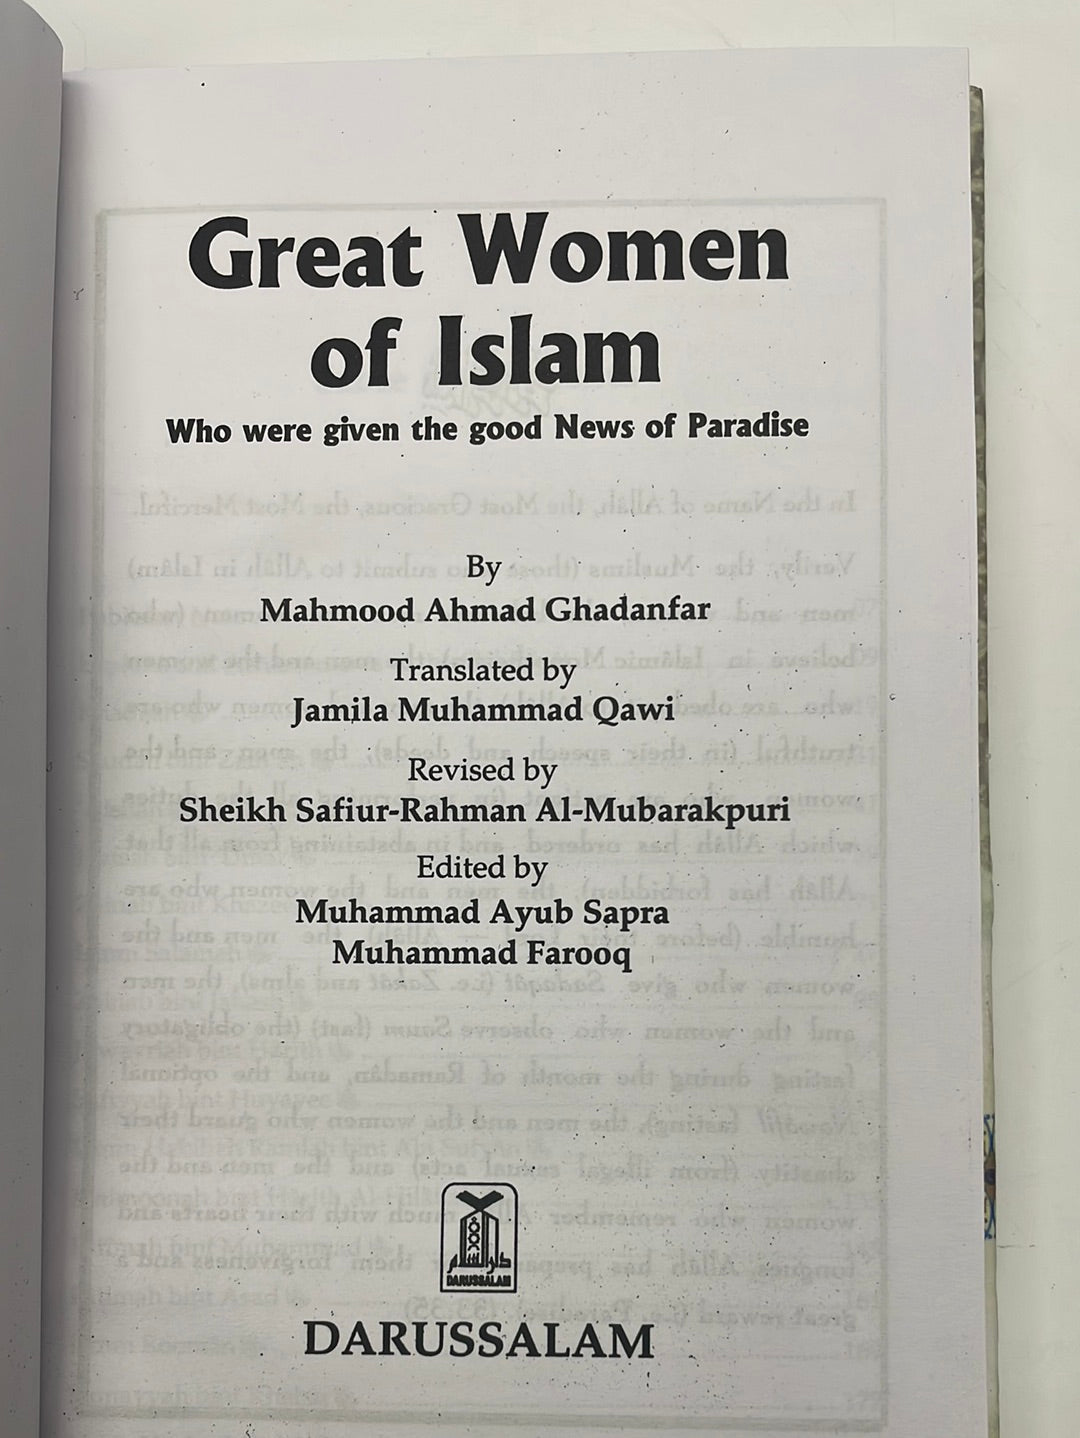 Great women of Islam